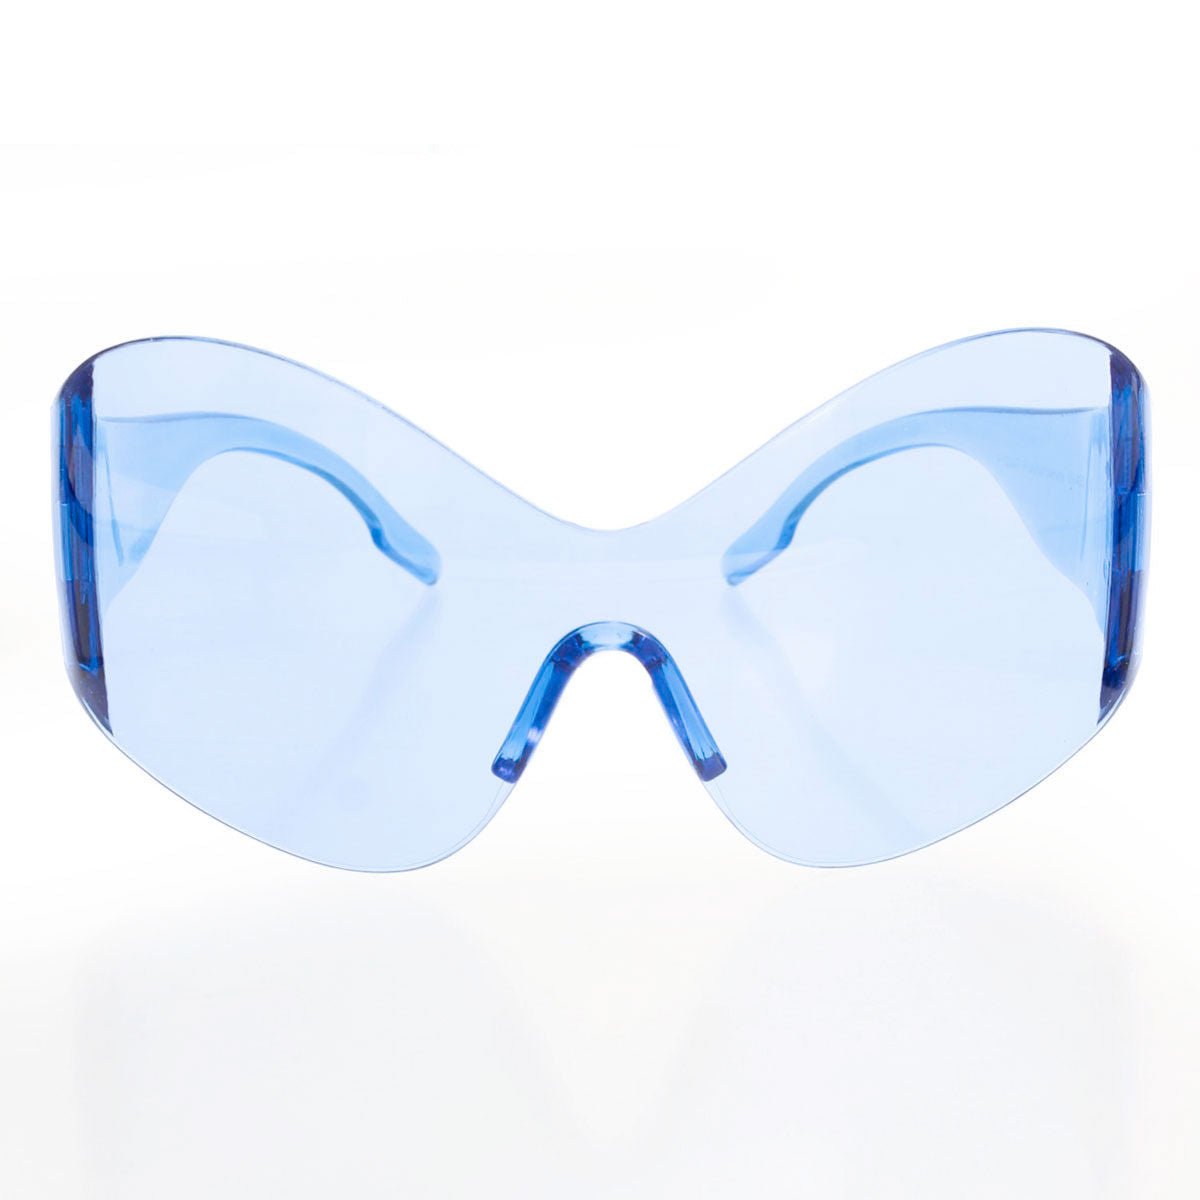 Sunglasses Butterfly Mask Blue Eyewear for Women - Bae Apparel